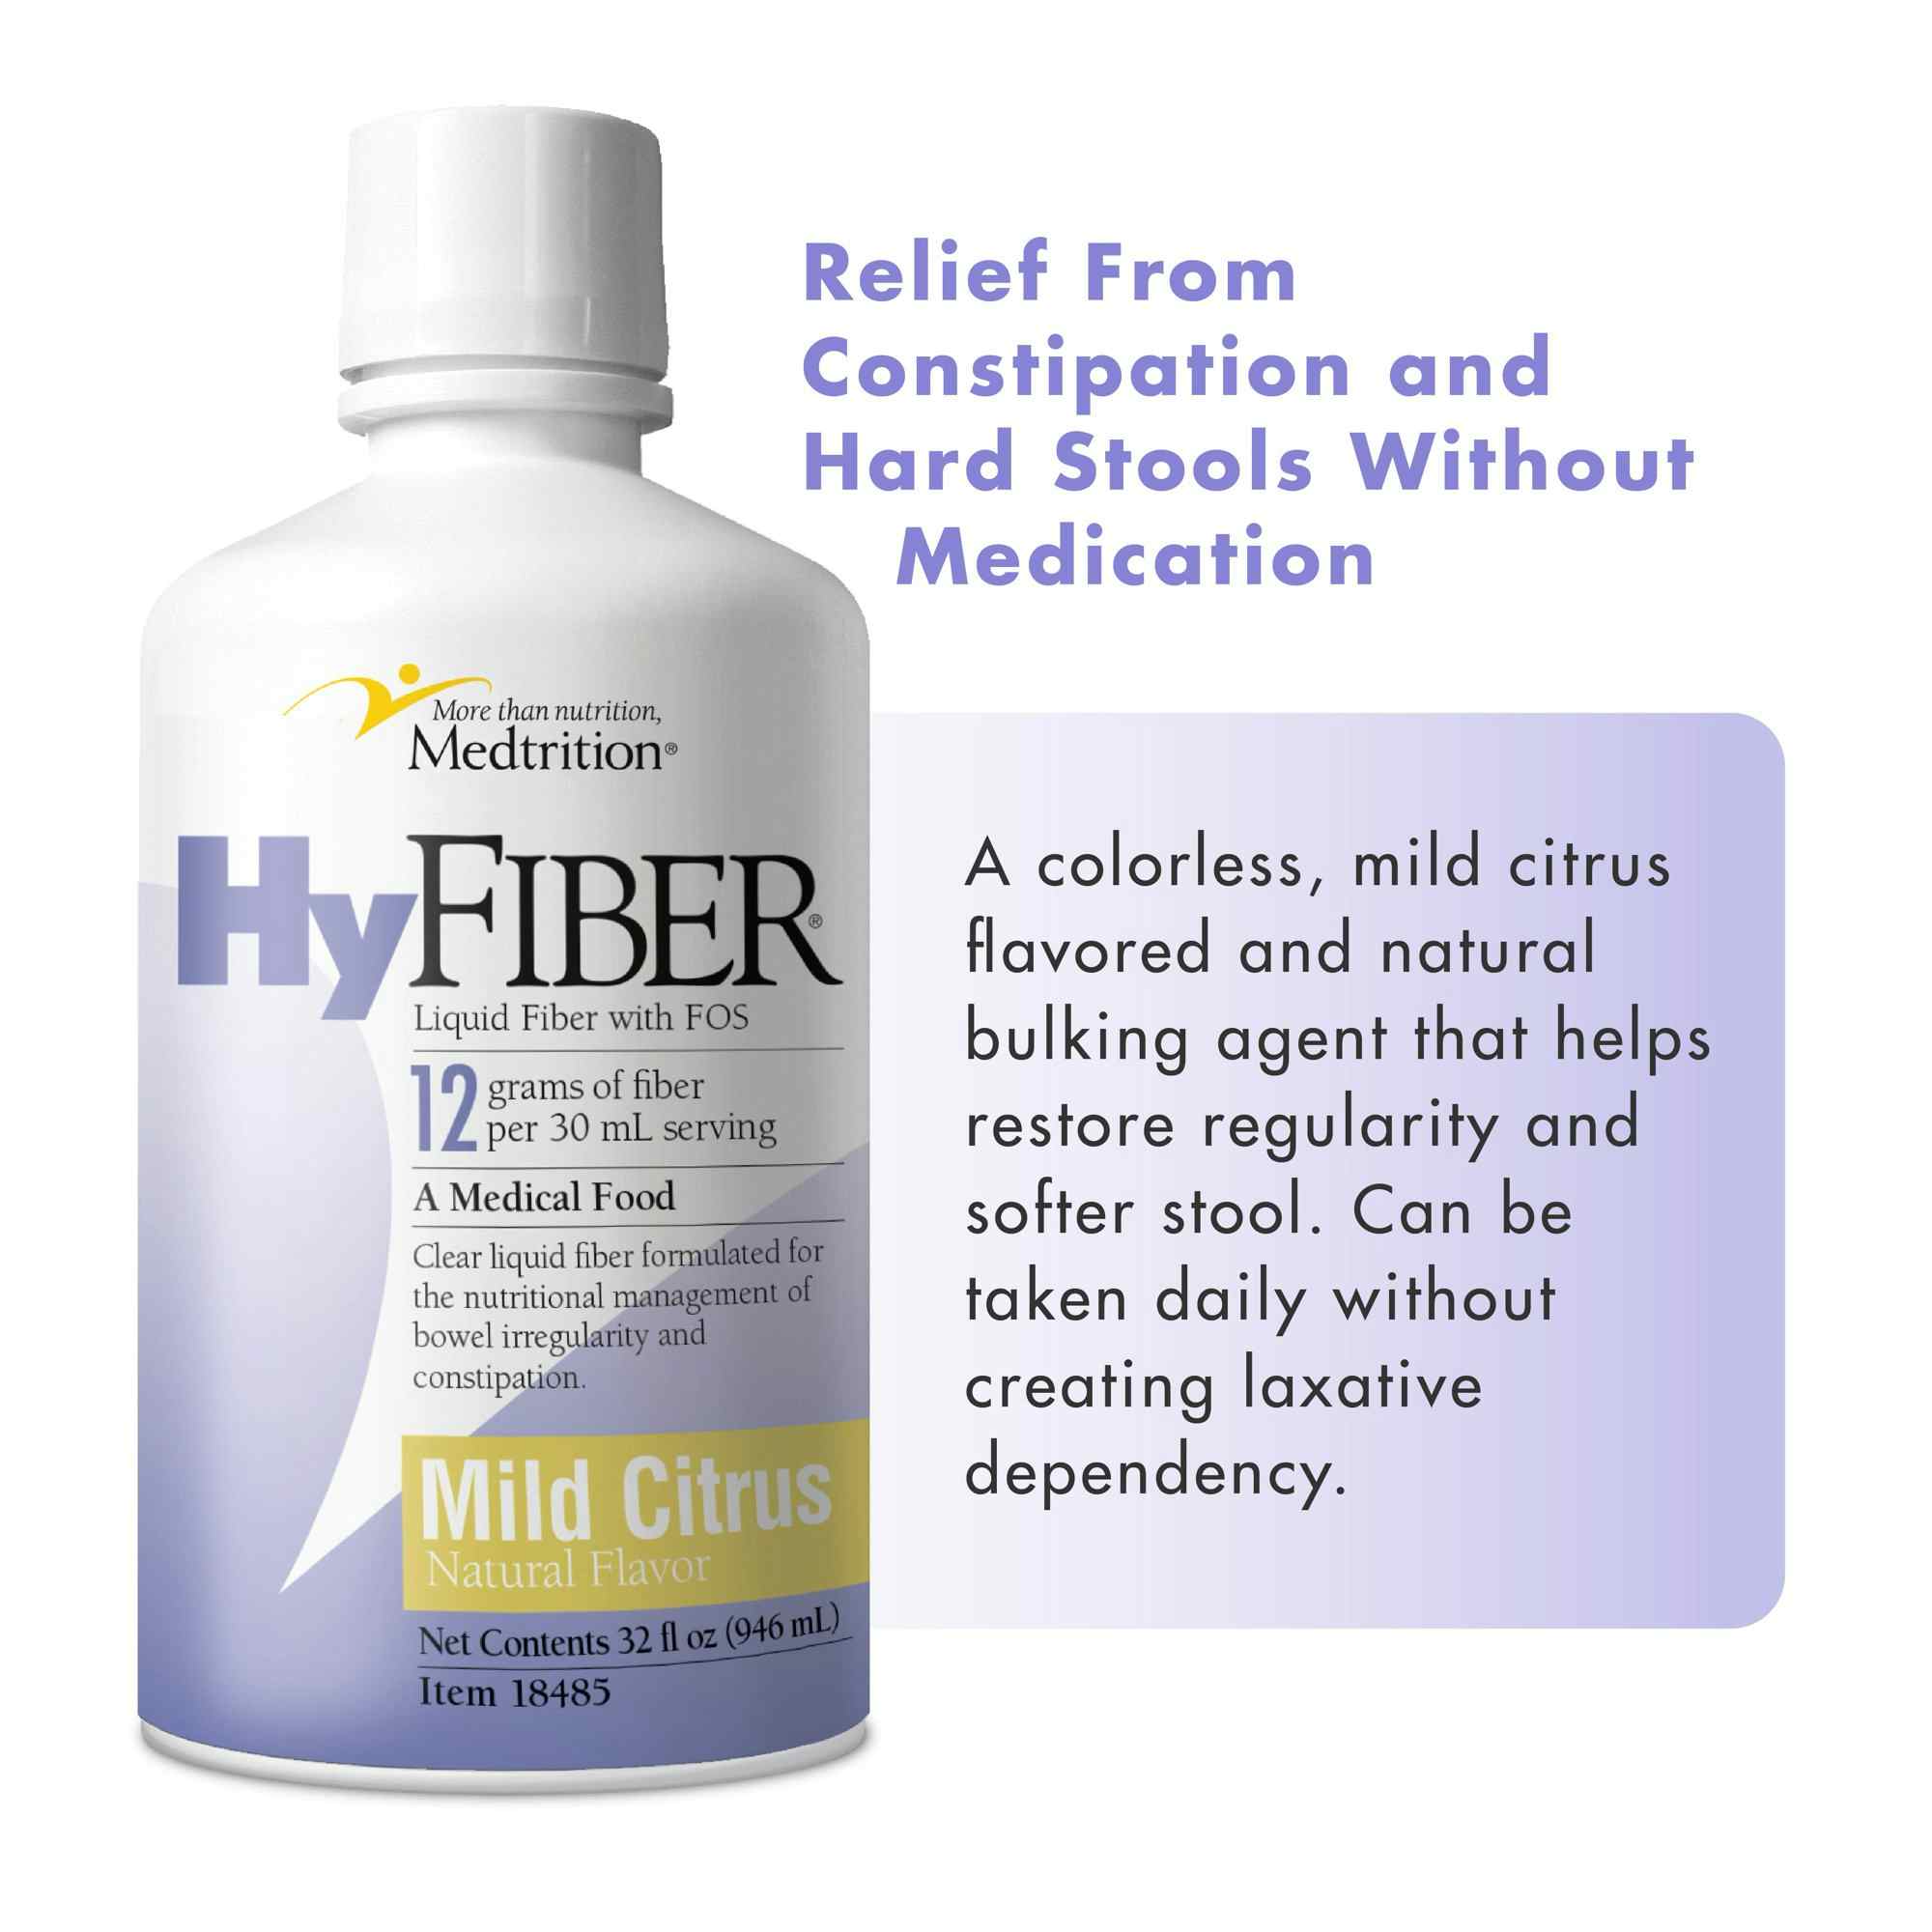 Medtrition HyFiber Liquid Fiber with FOS, Mild Citrus, 32 oz., 18485, Case of 4